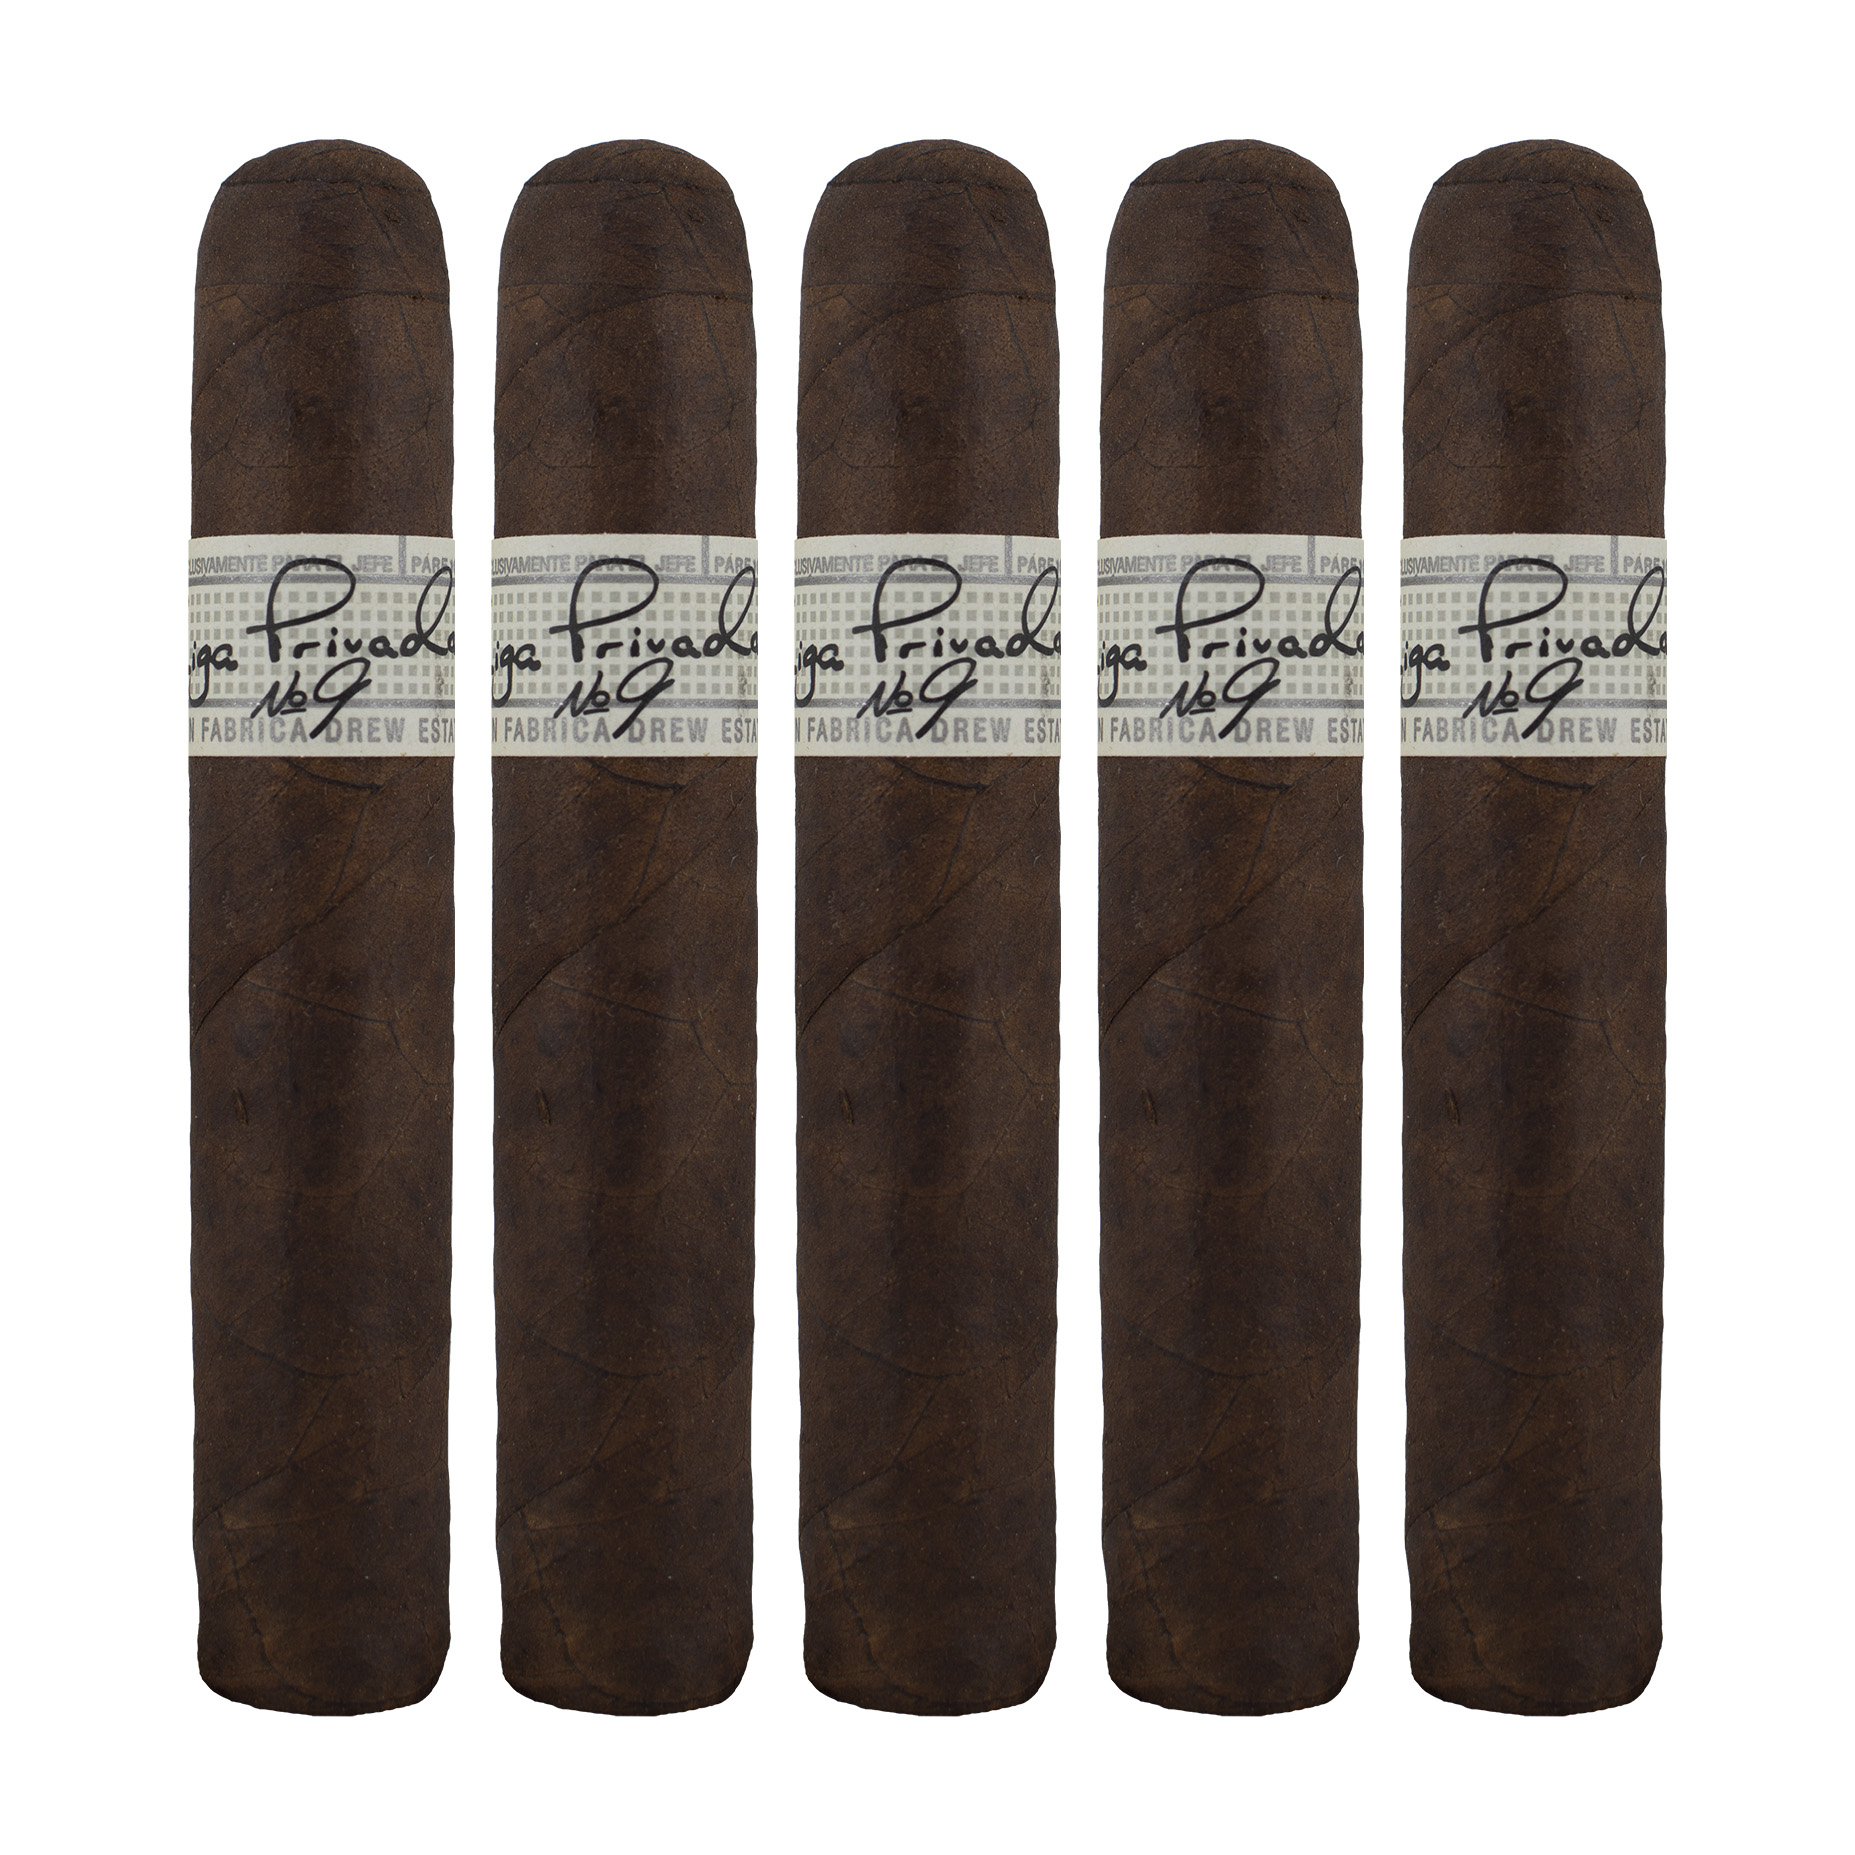 Liga Privada No. 9 Robusto Oscuro Cigar - 5 Pack